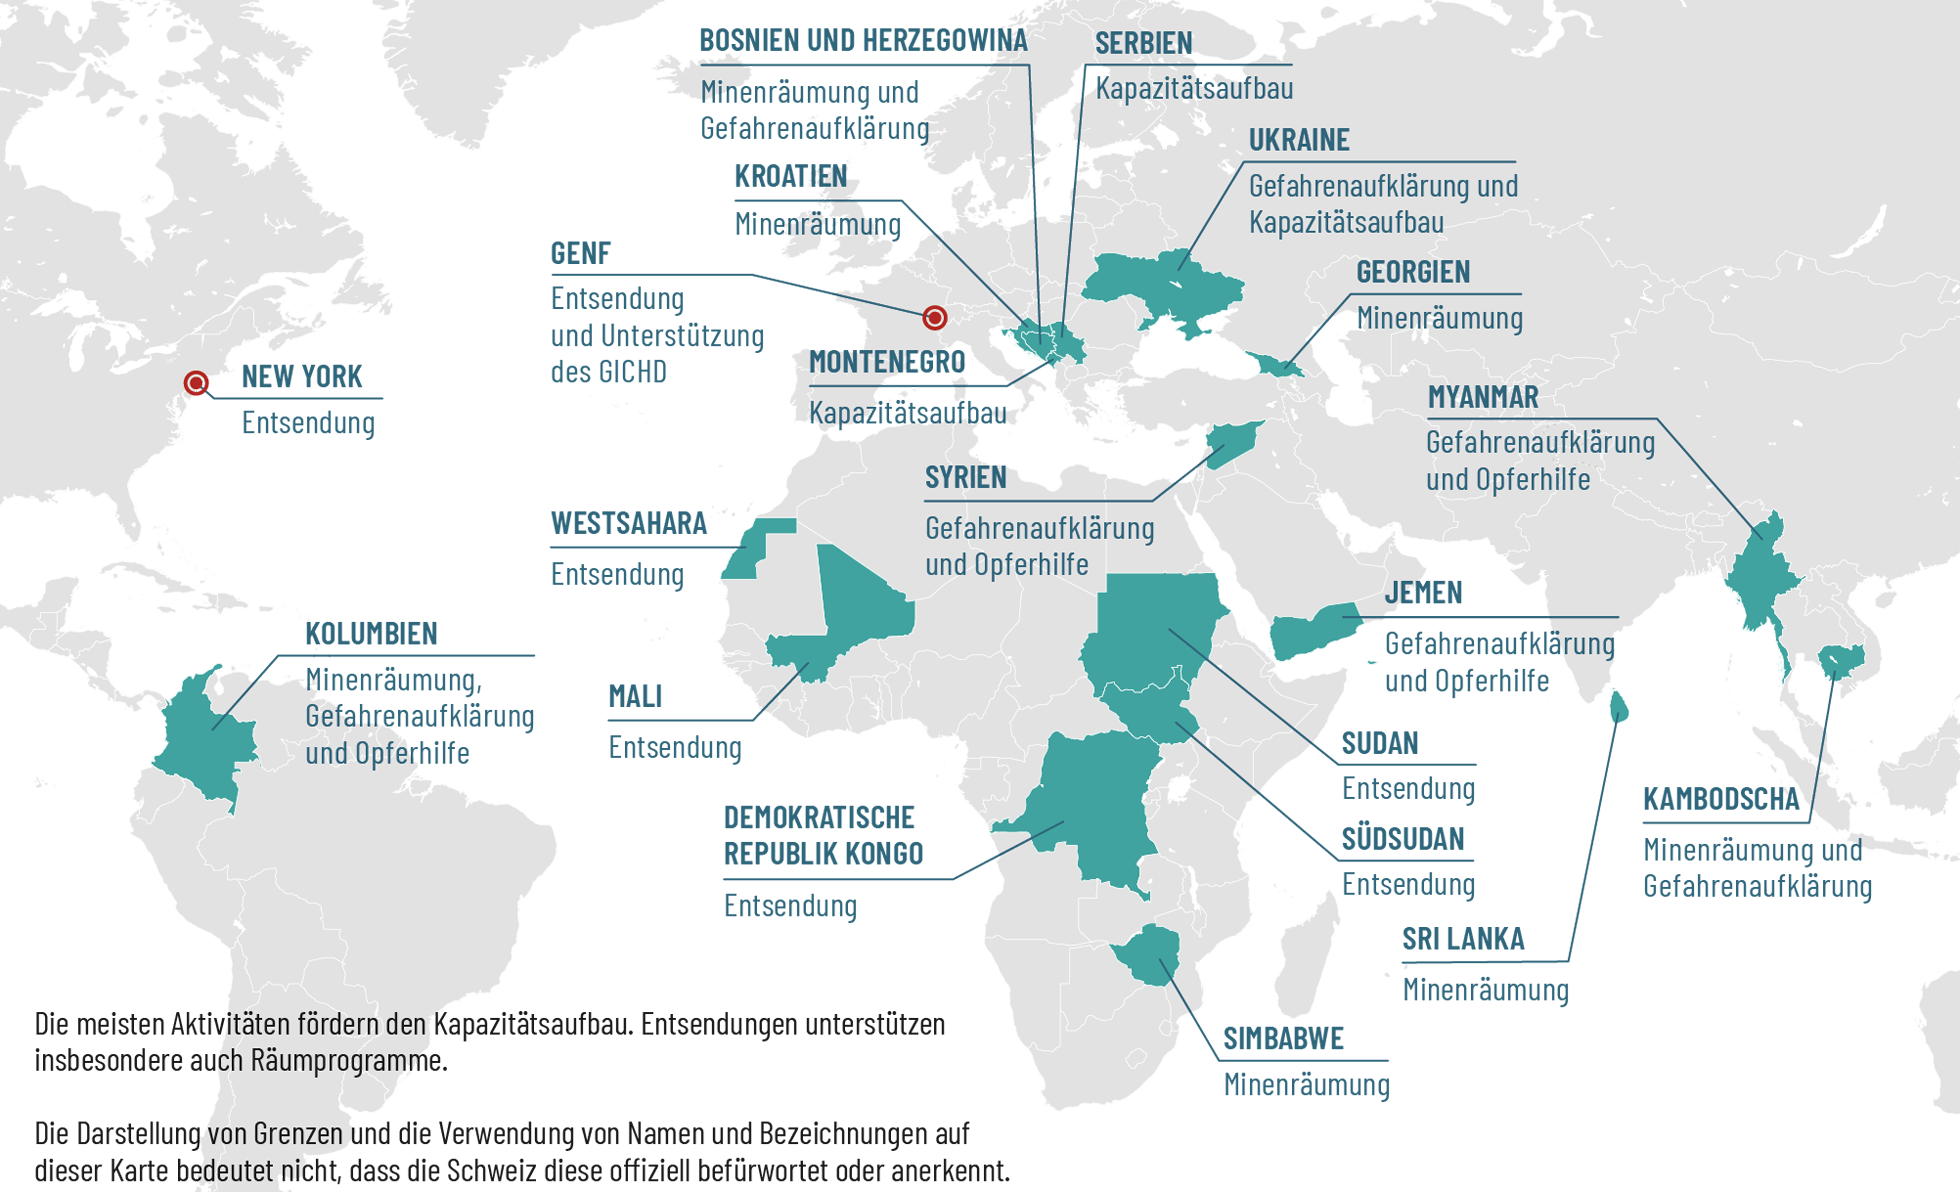 Weltkarte mit eingezeichneten Ländern, wo die Schweiz in der humanitären Minenräumung aktiv ist.